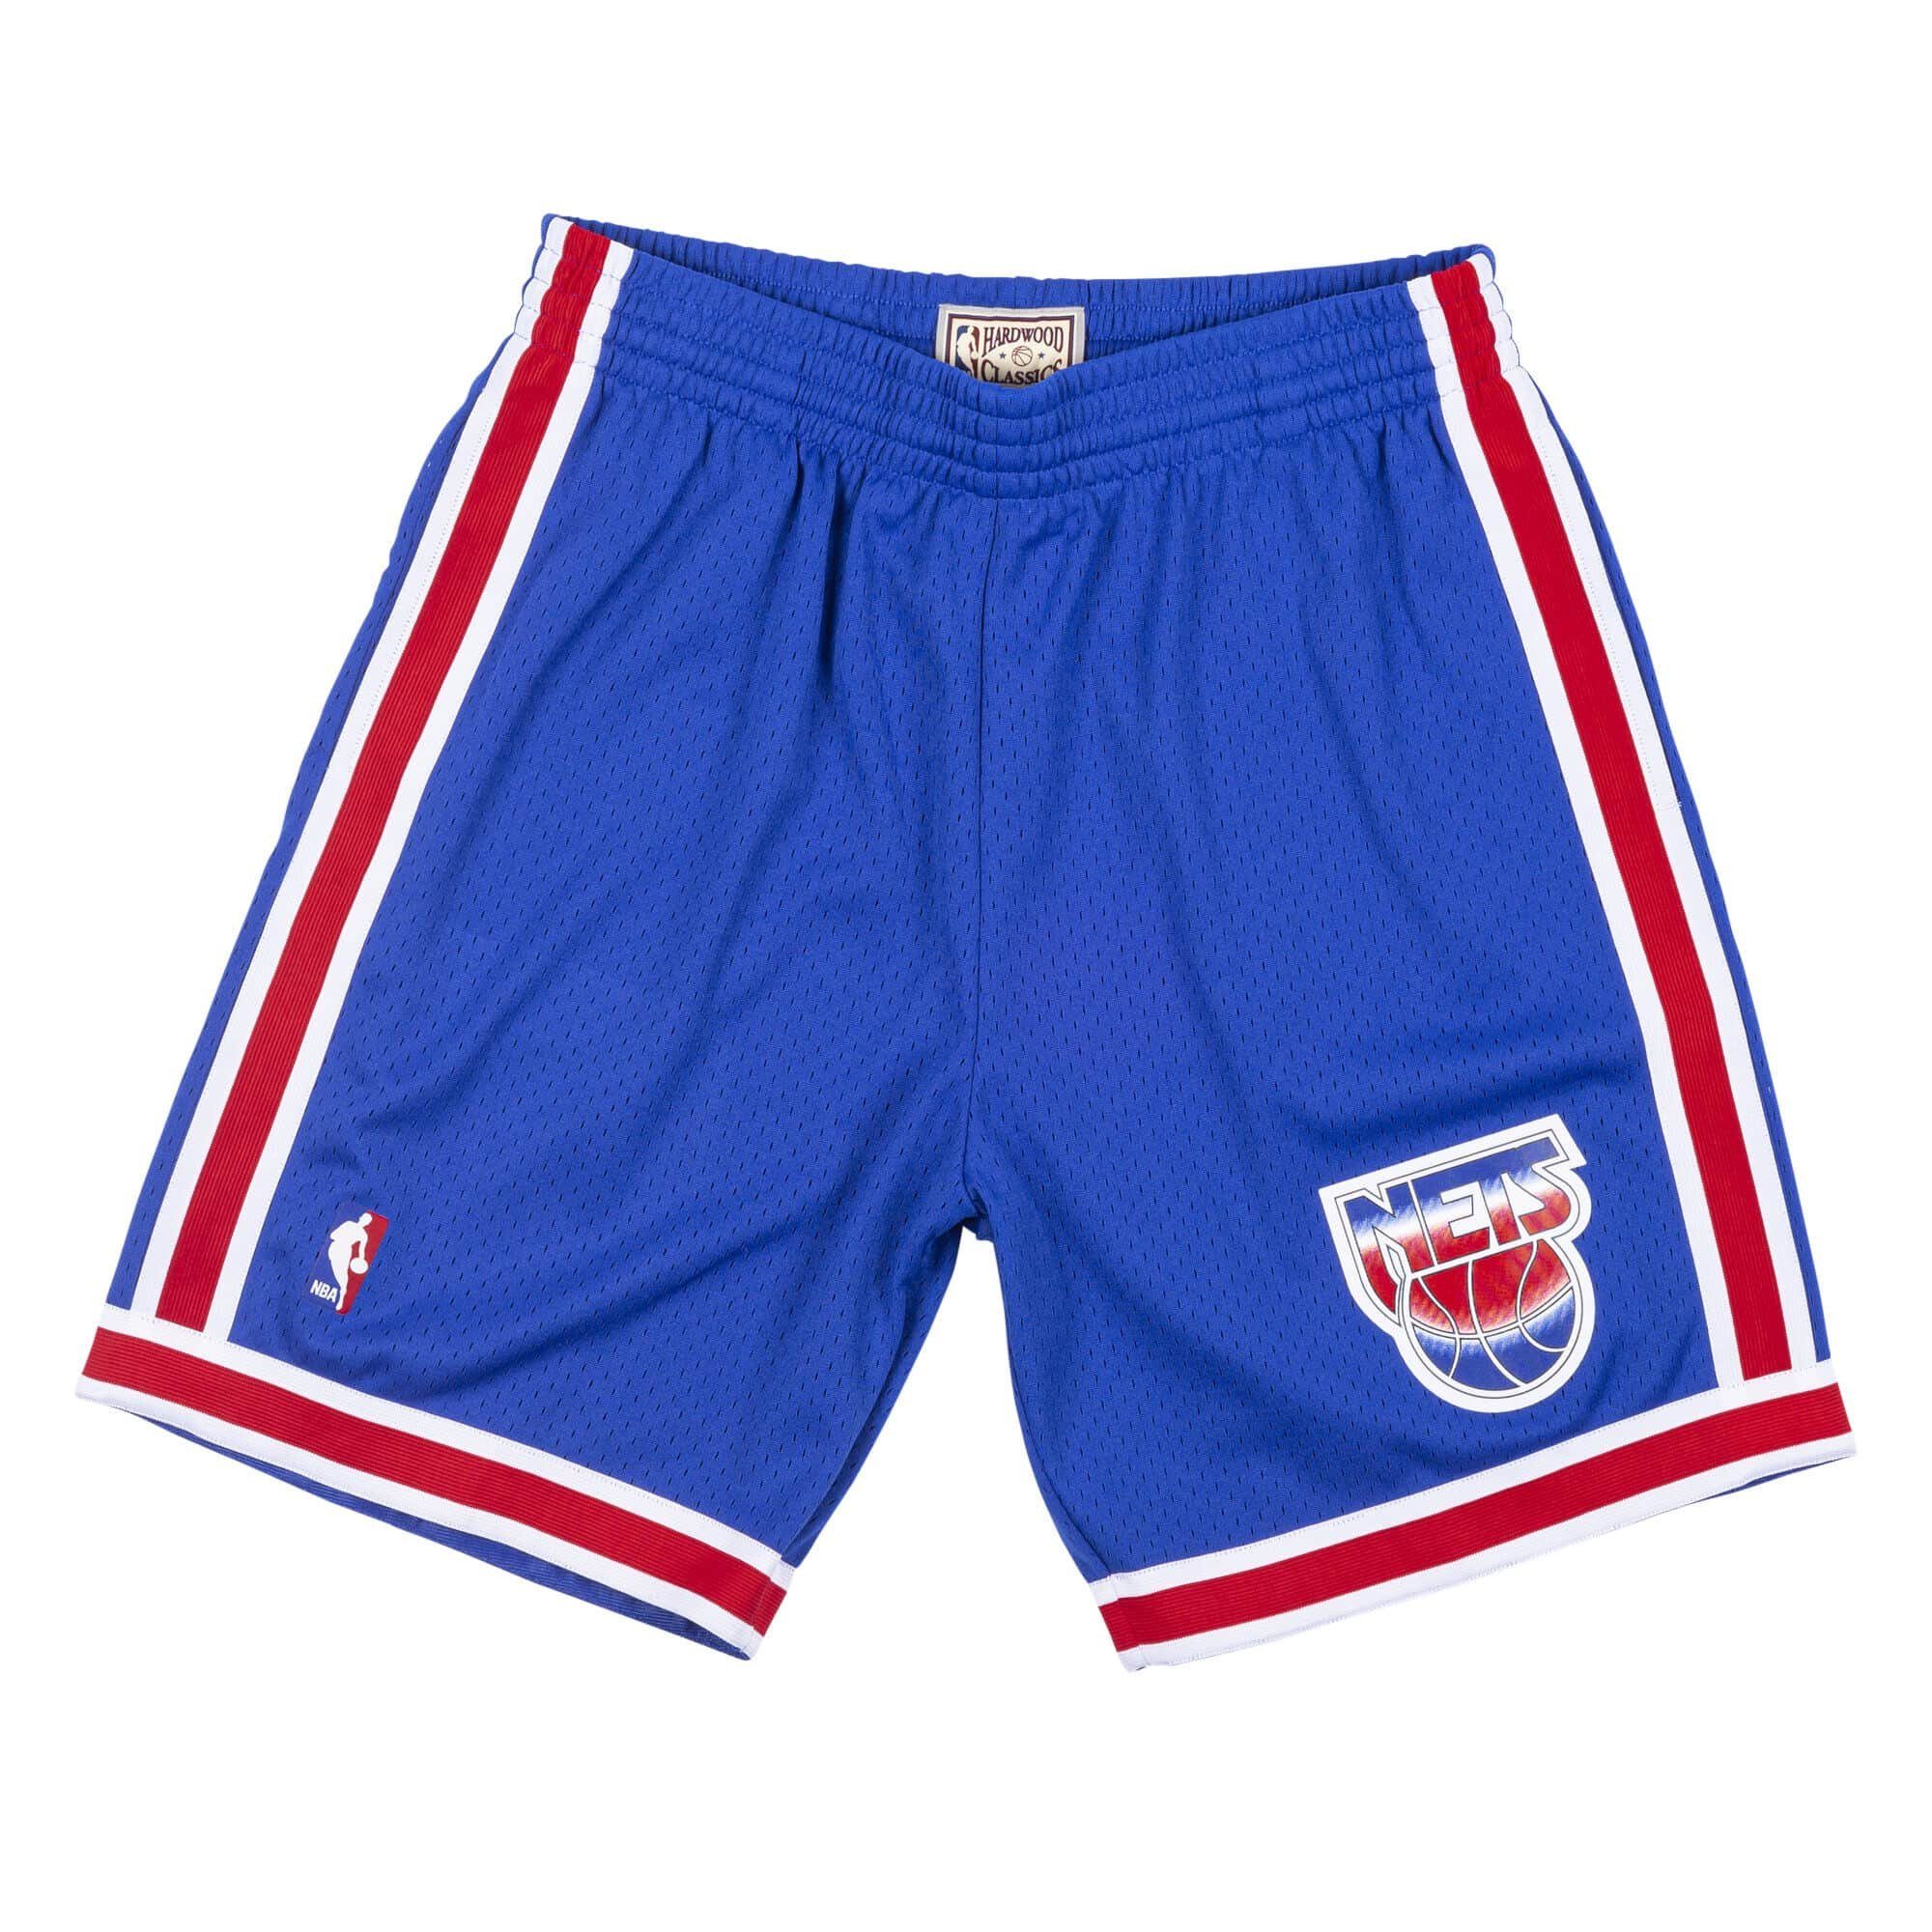 Mitchell & Ness Shorts NBA Swingman New Jersey Nets Road 199394